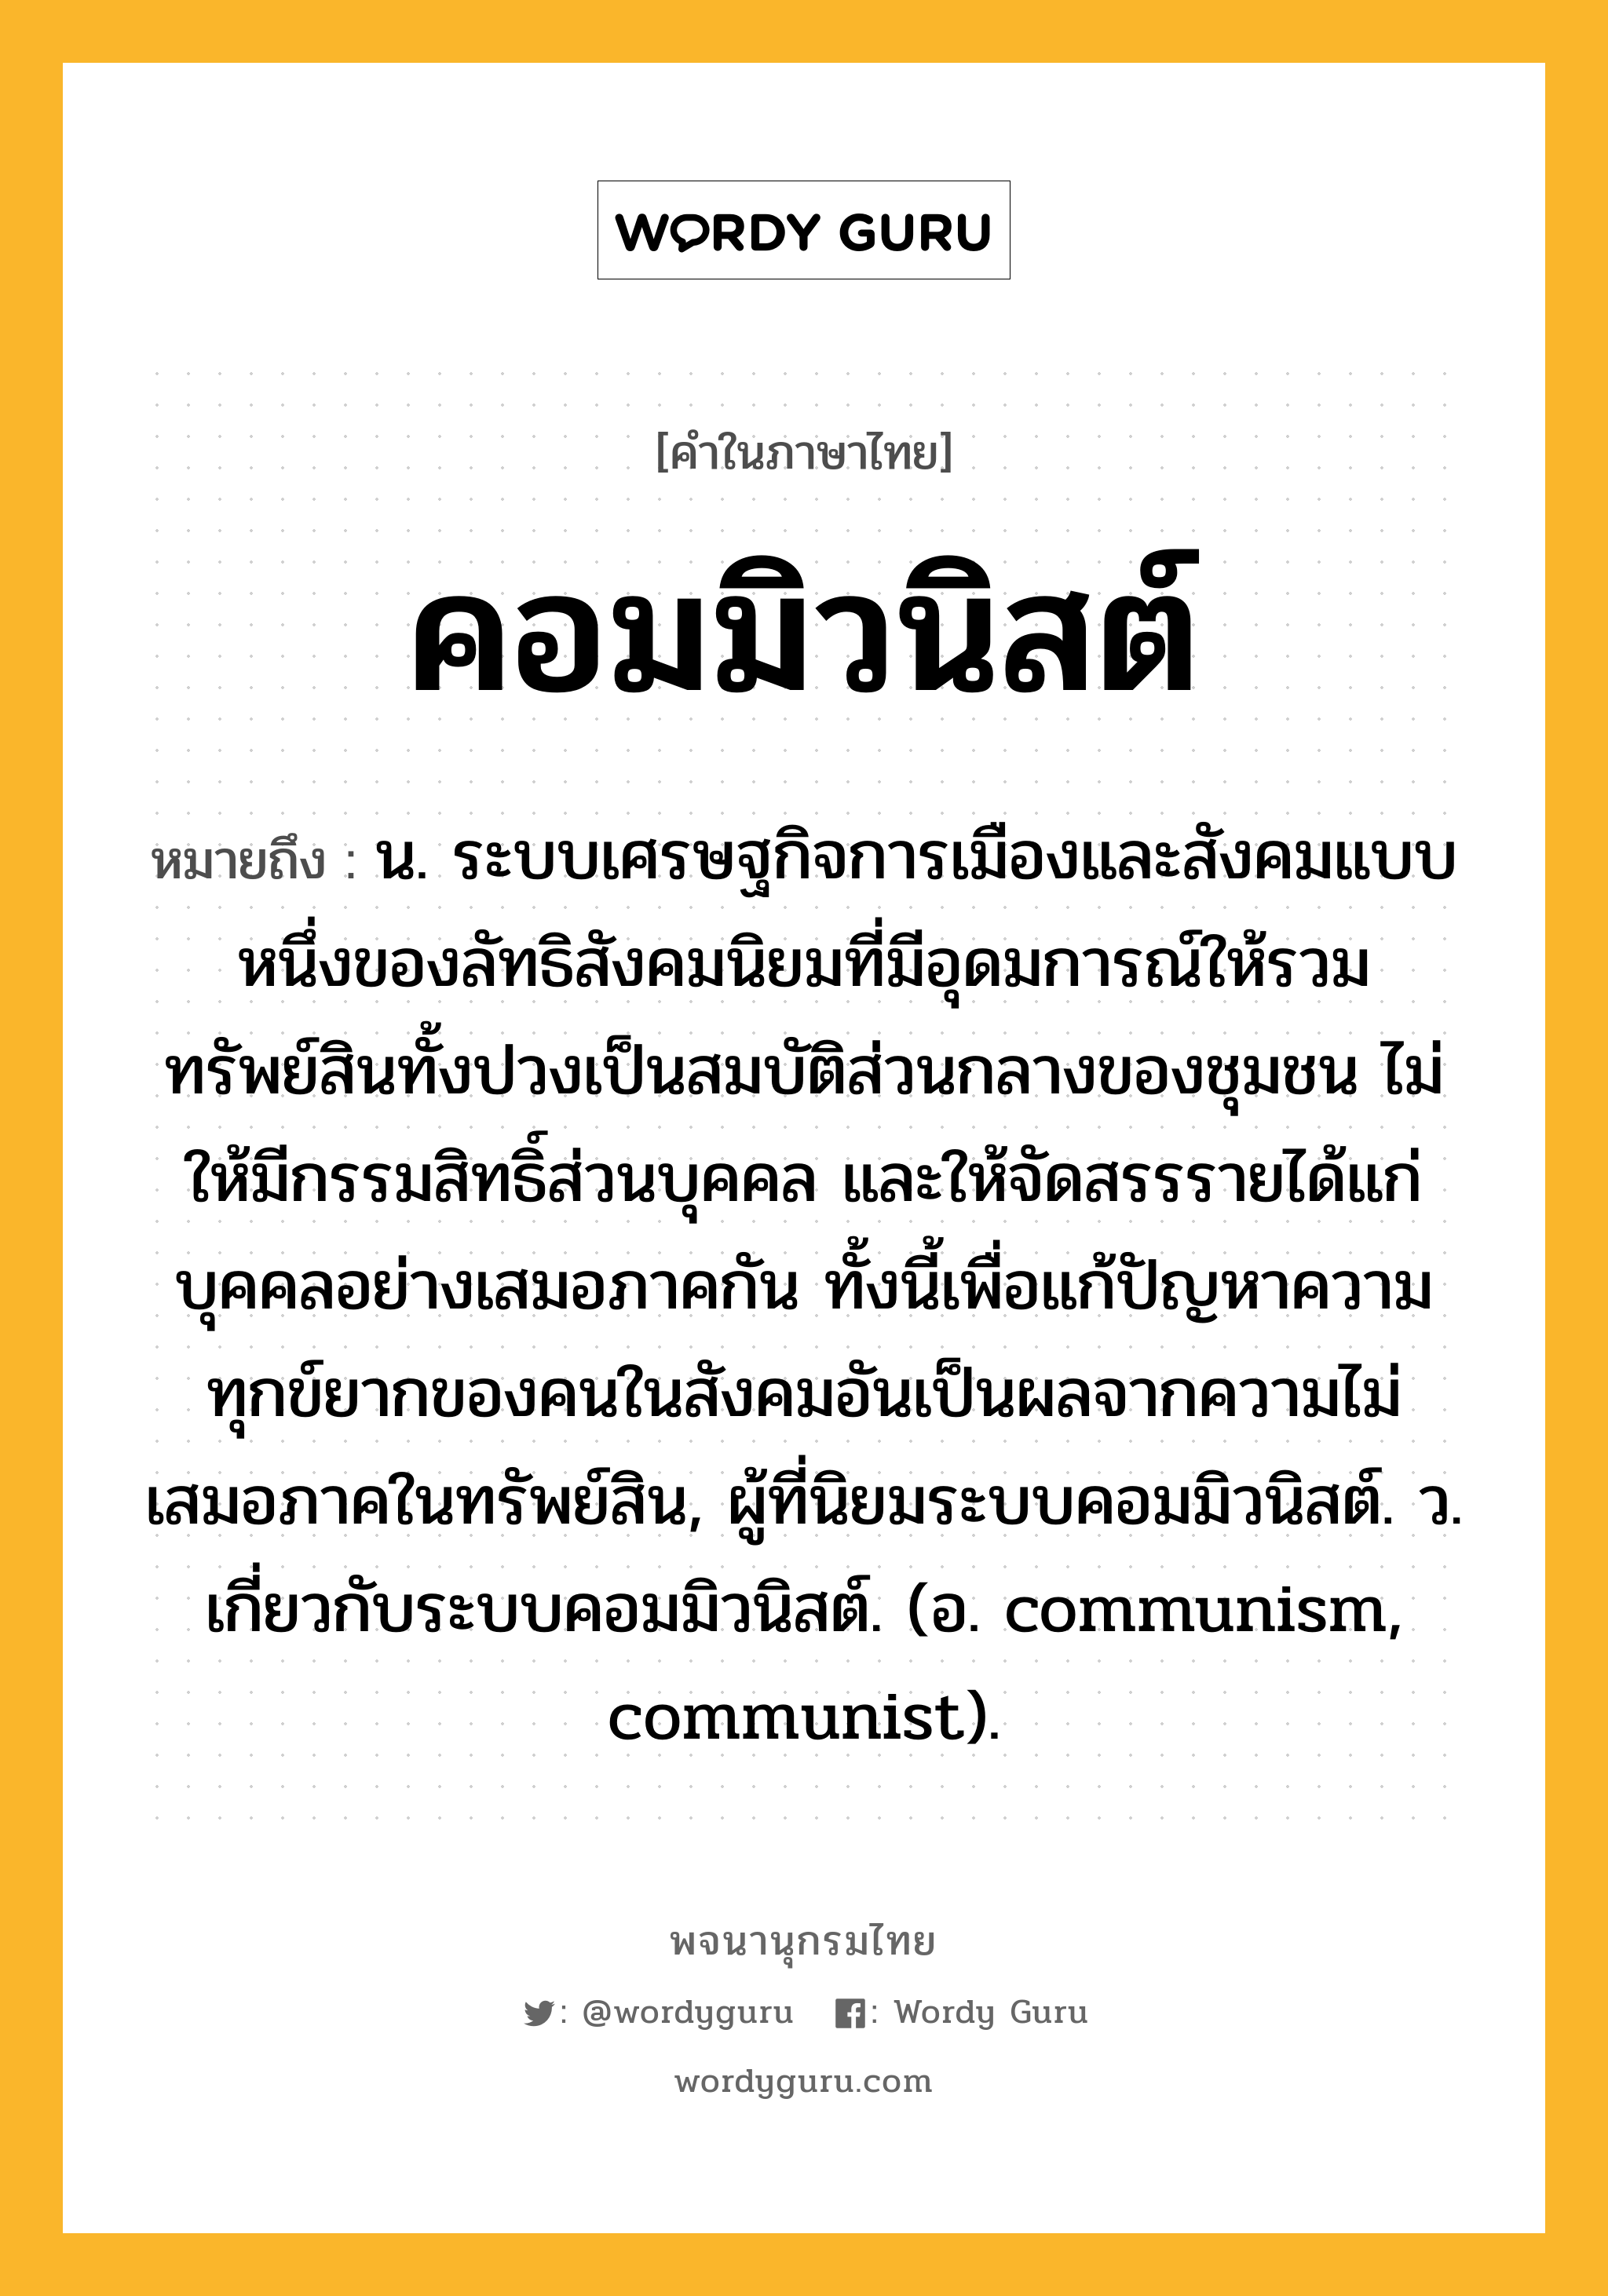 คอมมิวนิสต์ หมายถึงอะไร?, คำในภาษาไทย คอมมิวนิสต์ หมายถึง น. ระบบเศรษฐกิจการเมืองและสังคมแบบหนึ่งของลัทธิสังคมนิยมที่มีอุดมการณ์ให้รวมทรัพย์สินทั้งปวงเป็นสมบัติส่วนกลางของชุมชน ไม่ให้มีกรรมสิทธิ์ส่วนบุคคล และให้จัดสรรรายได้แก่บุคคลอย่างเสมอภาคกัน ทั้งนี้เพื่อแก้ปัญหาความทุกข์ยากของคนในสังคมอันเป็นผลจากความไม่เสมอภาคในทรัพย์สิน, ผู้ที่นิยมระบบคอมมิวนิสต์. ว. เกี่ยวกับระบบคอมมิวนิสต์. (อ. communism, communist).